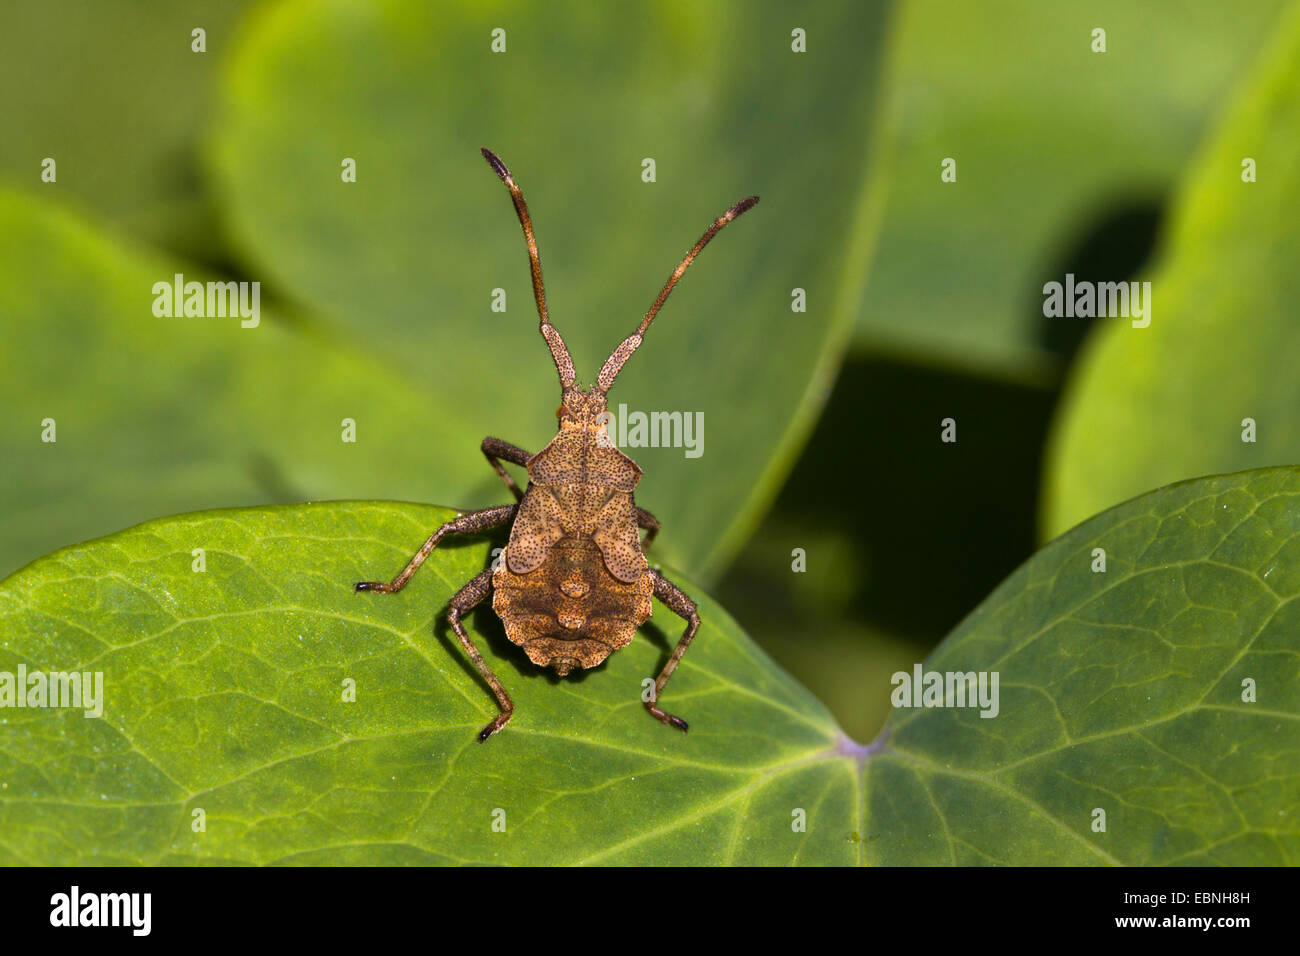 squash bug (Coreus marginatus, Mesocerus marginatus), juvenile sitting on a leaf, Germany Stock Photo